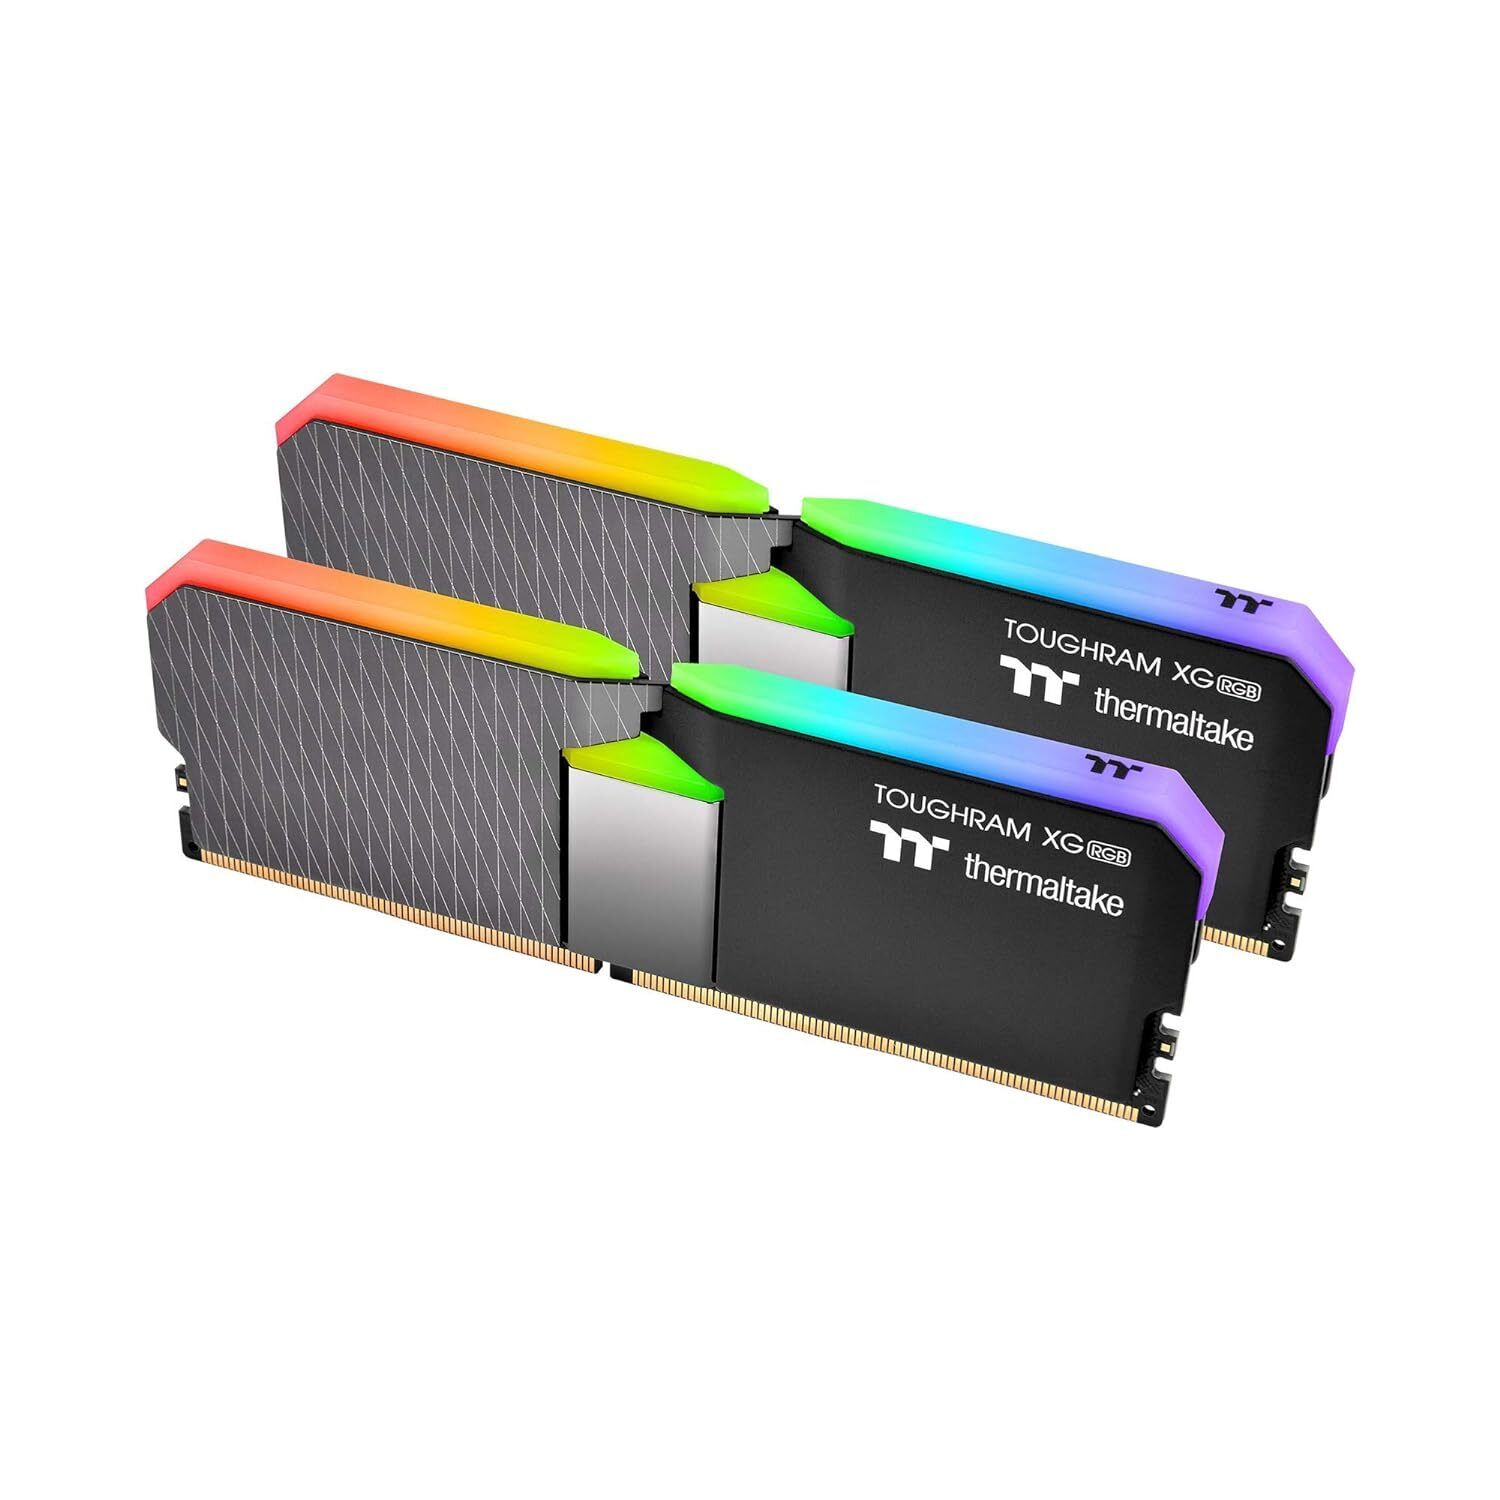 Thermaltake TOUGHRAM XG RGB DDR4 4600MHz 16GB (8GB x 2) 16.8 Million Color RGB